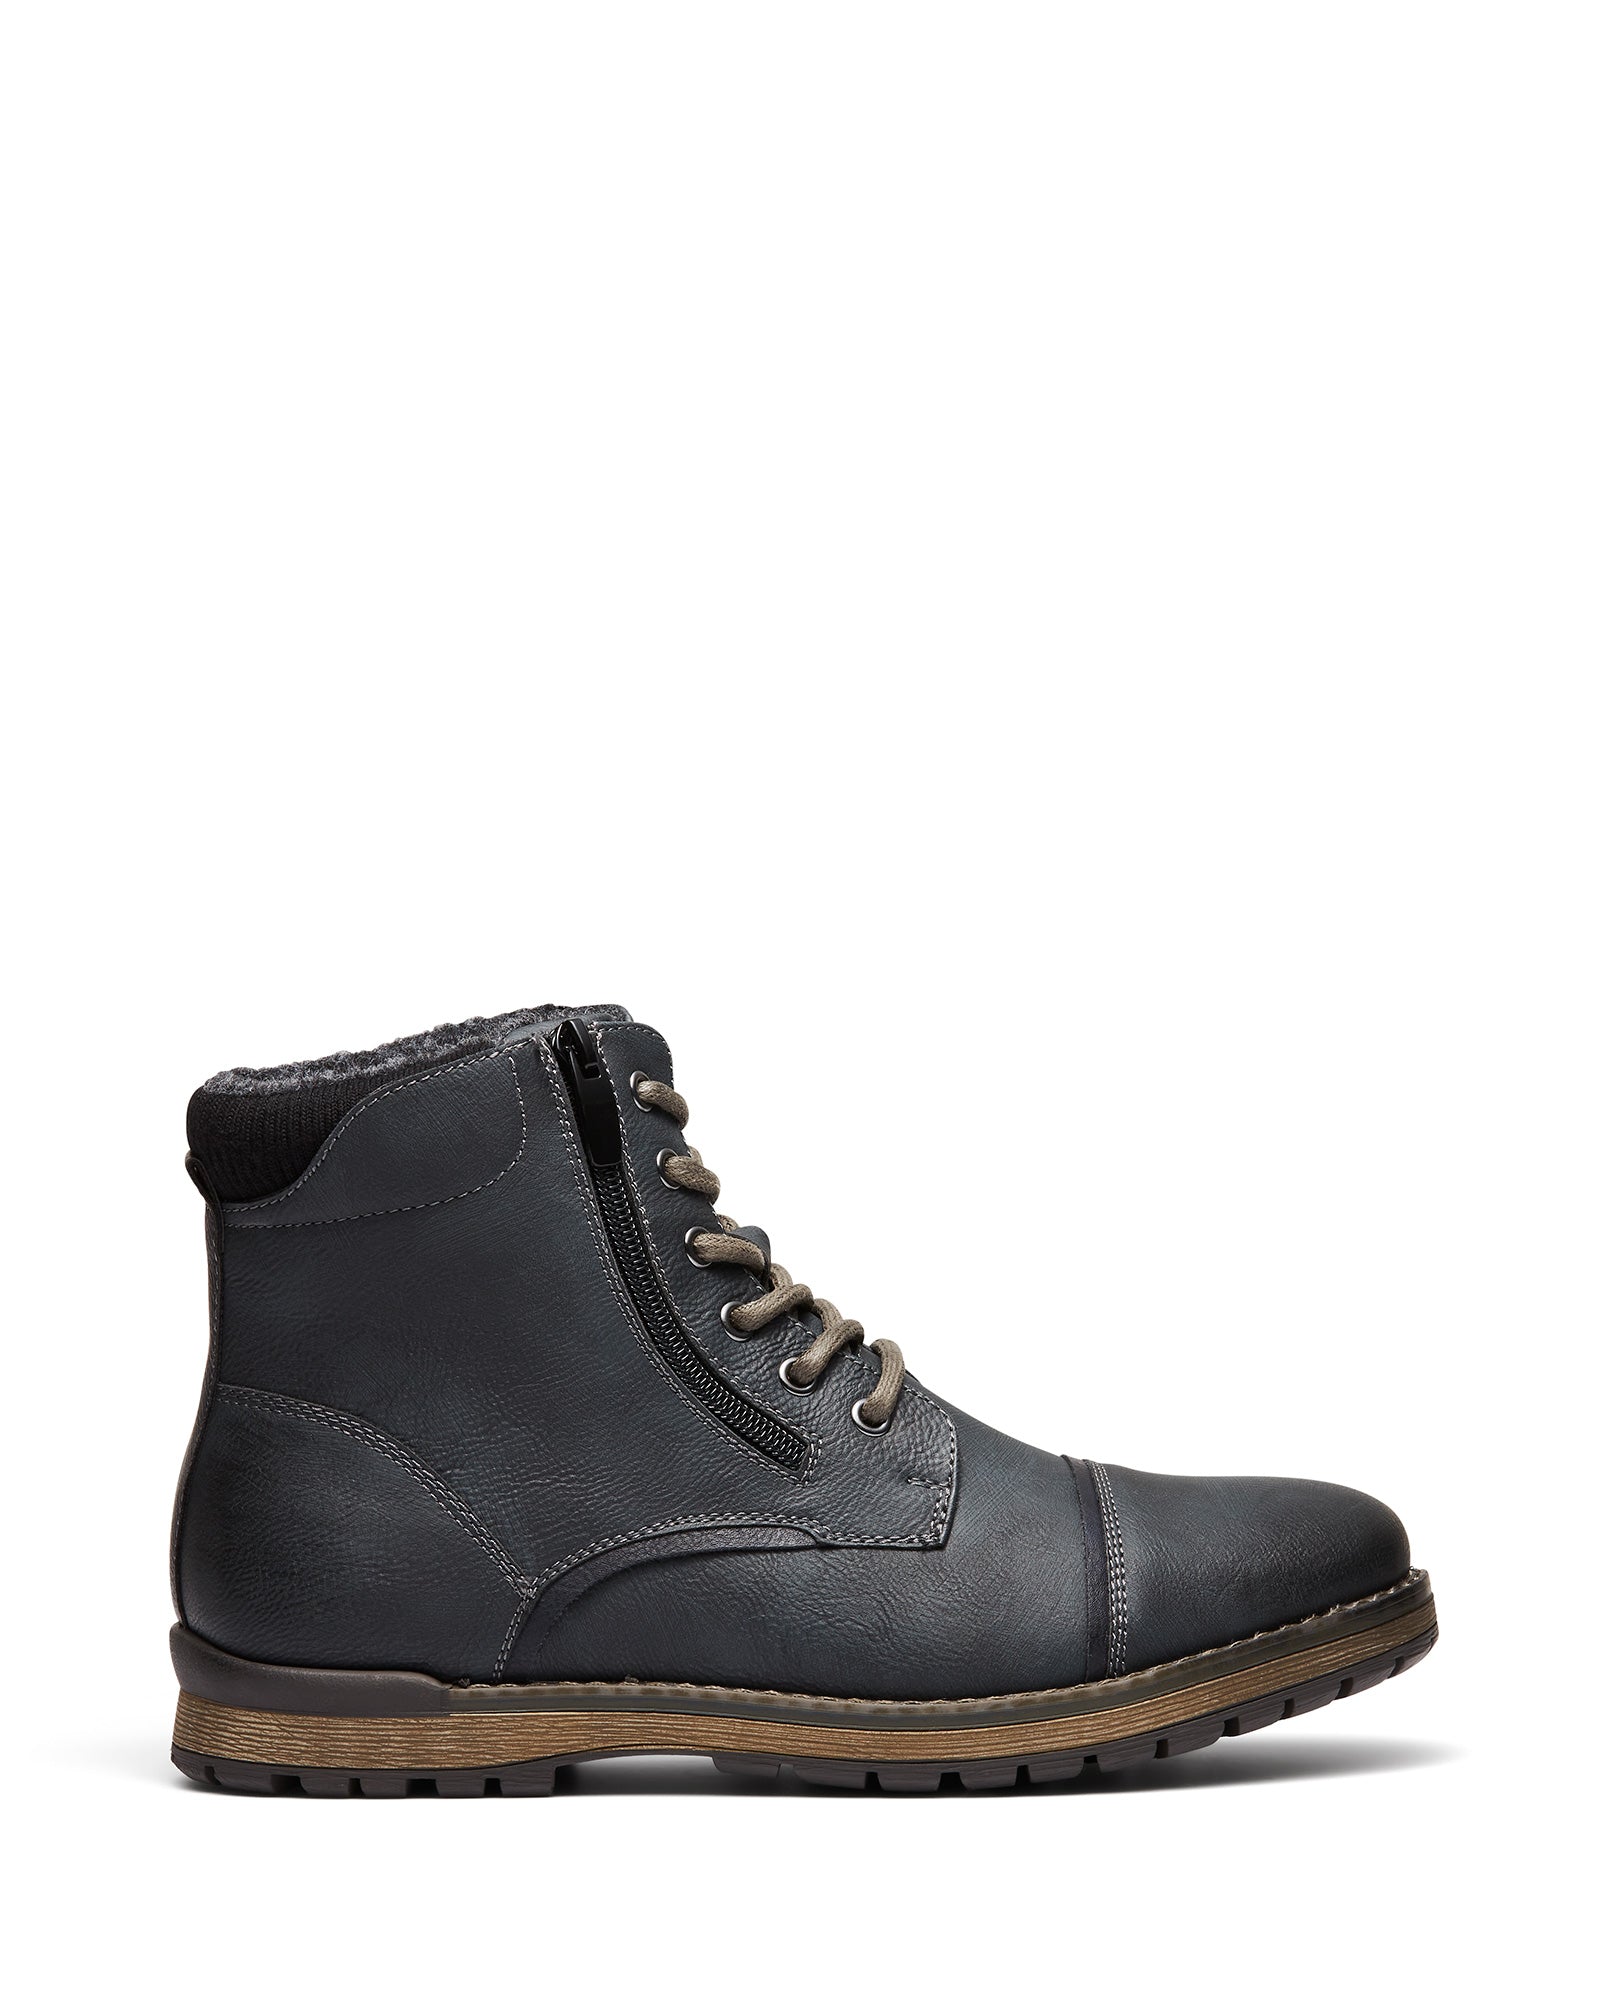 Uncut Shoes Marlboro Black | Men's Boot | Combat Boot | Lace Up